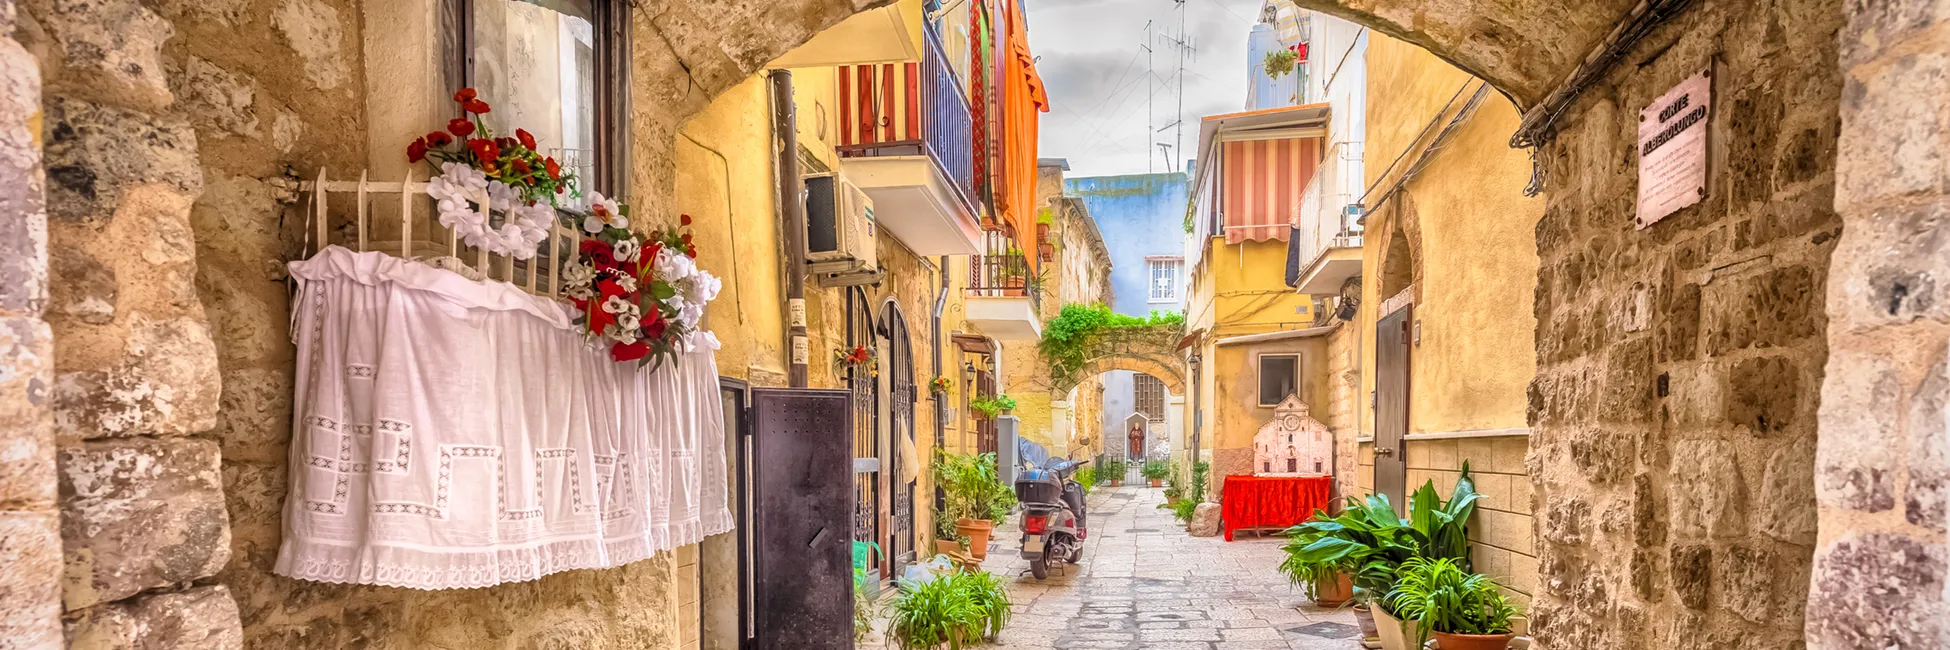 Jolie ruelle de la vieille ville de Bari